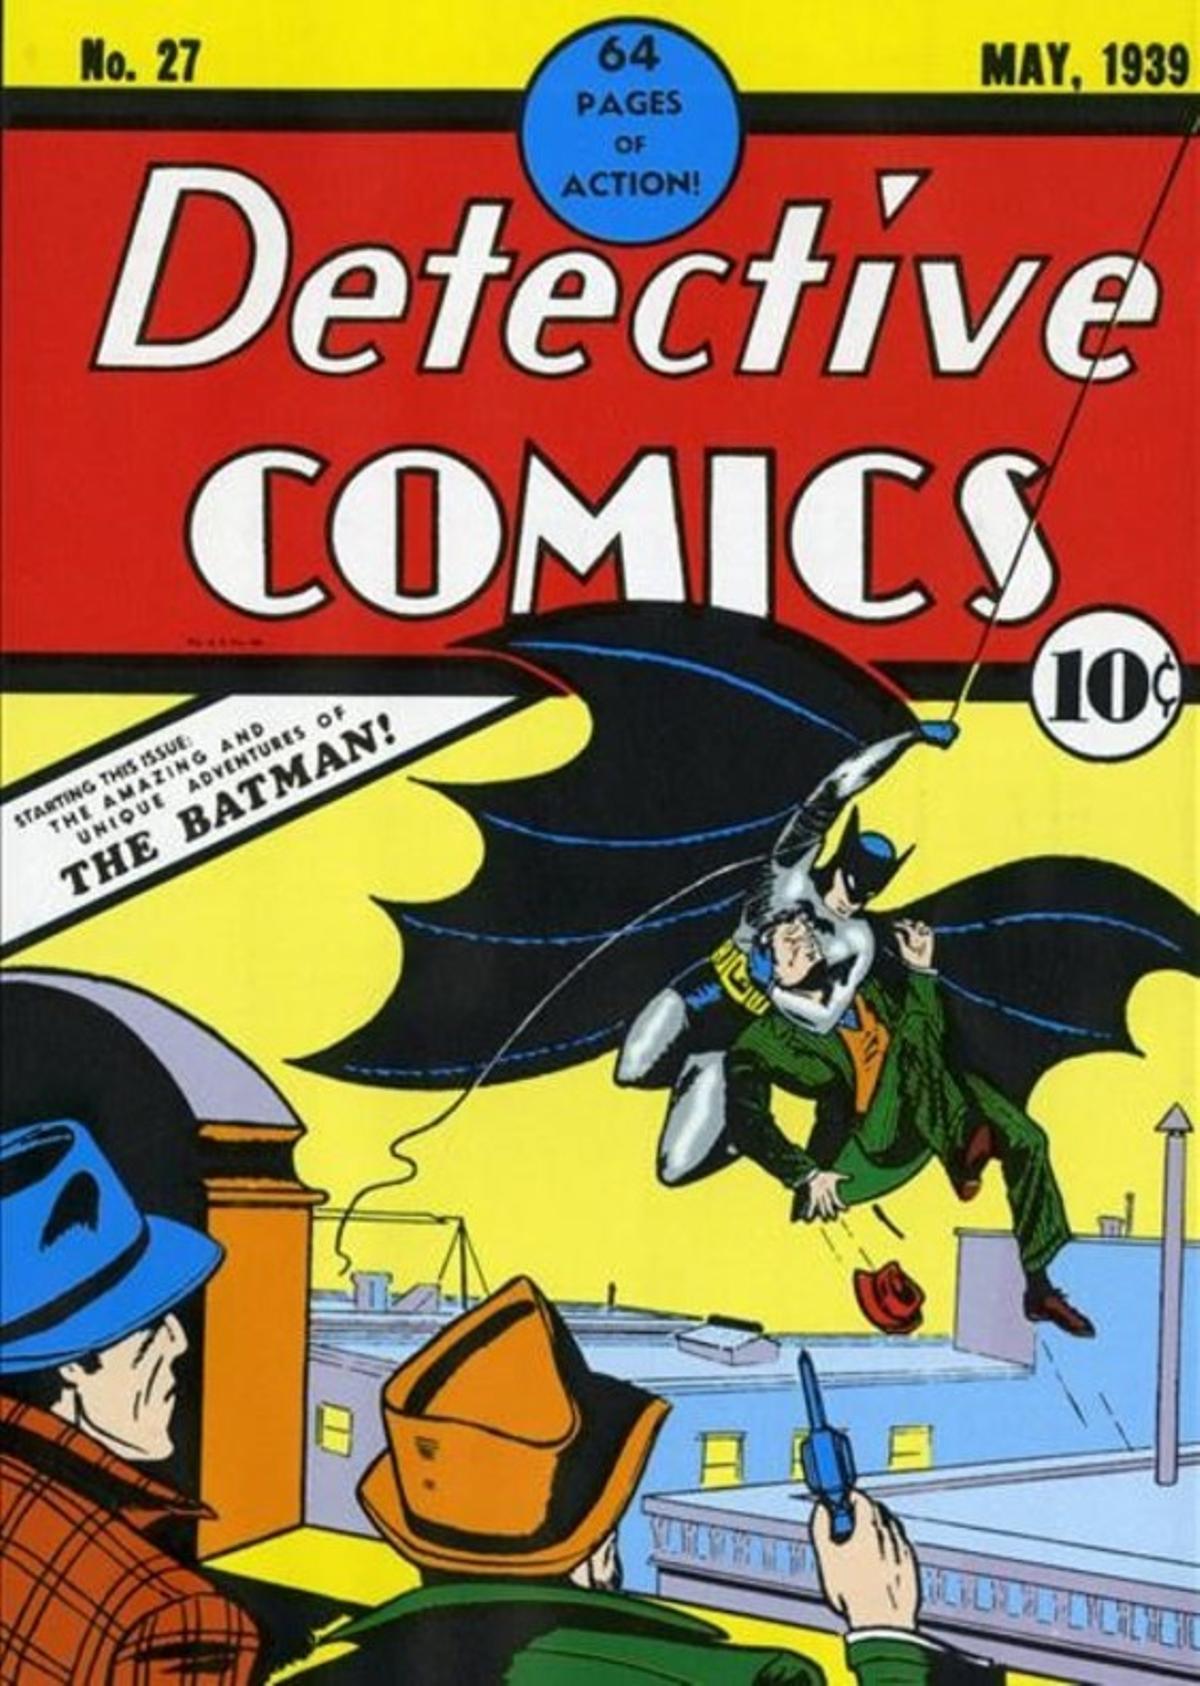 El número de ’Detective Comics’ en el que aparecía por primera vez Batman, en mayo de 1939.  